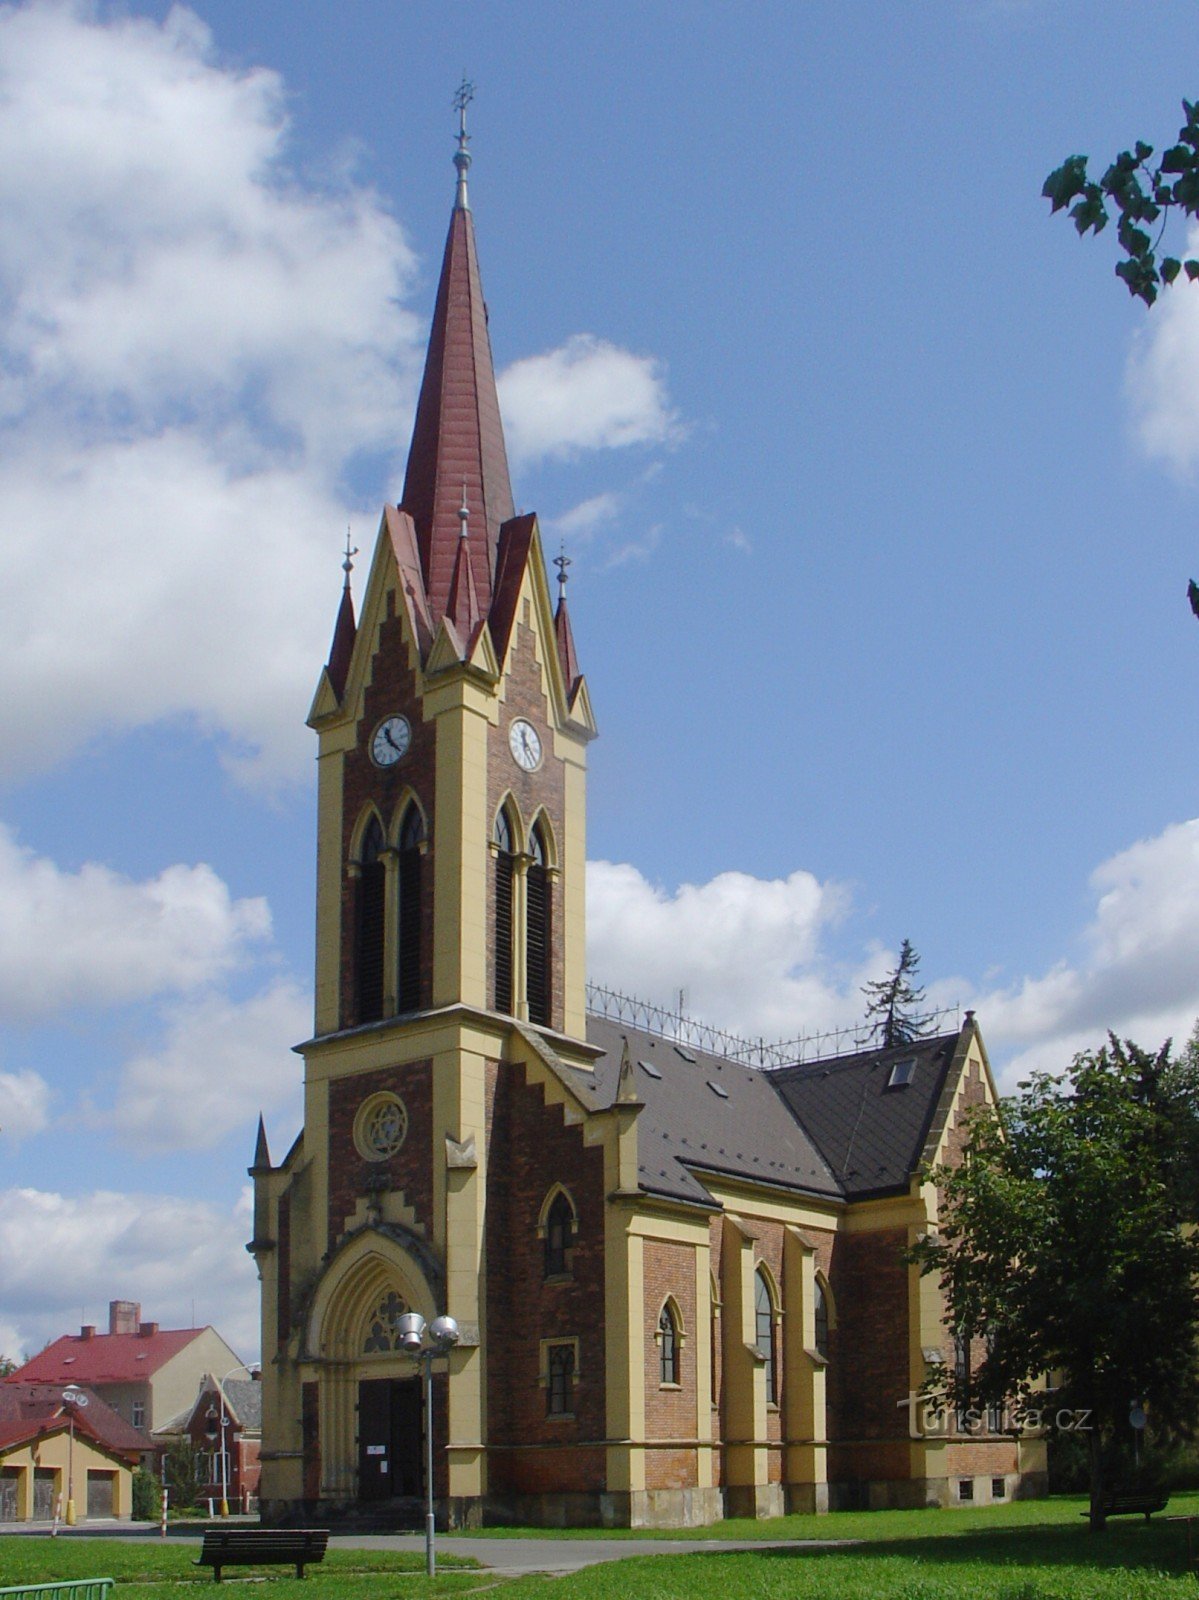 Евангелическая церковь в Забржеже